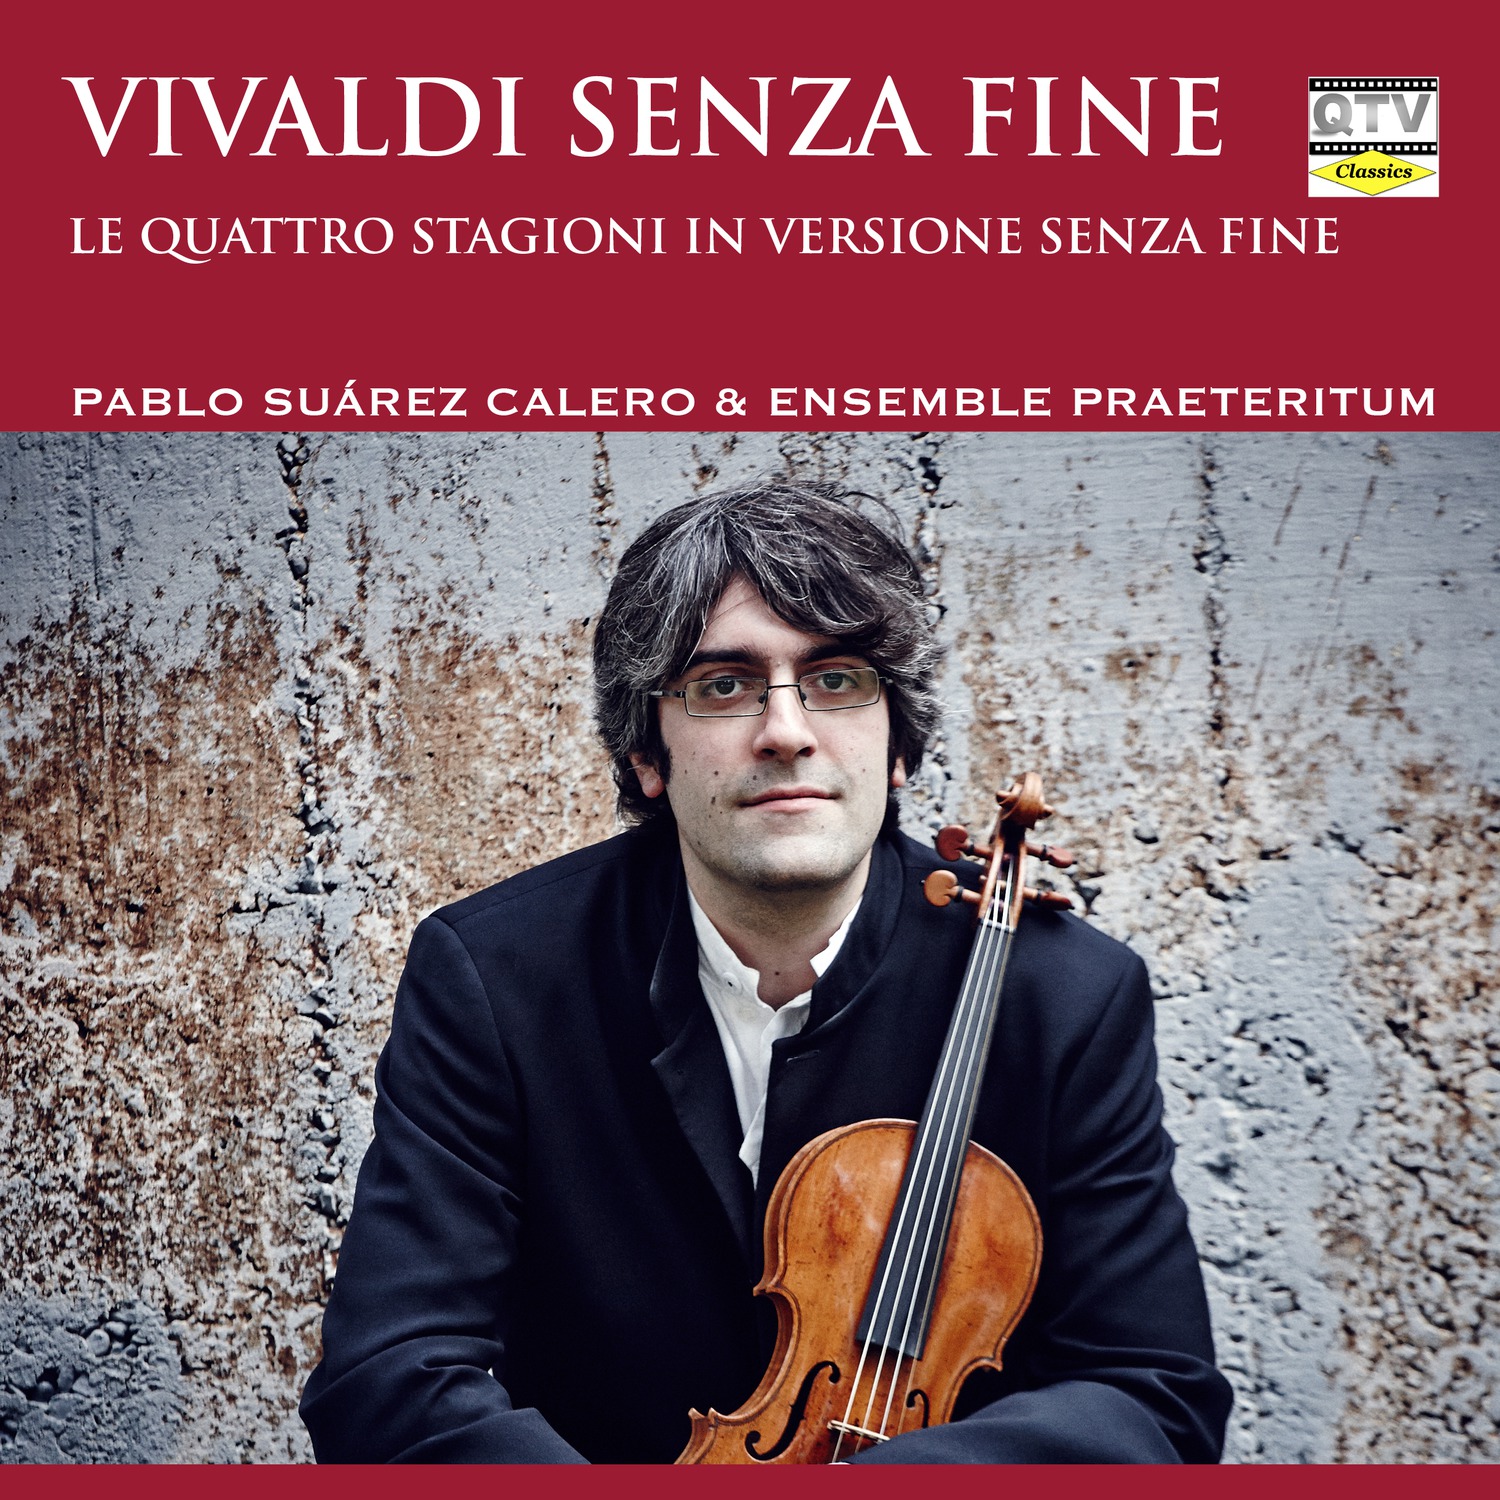 Vivaldi senza fine (Le quattro stagioni in versione senza fine)